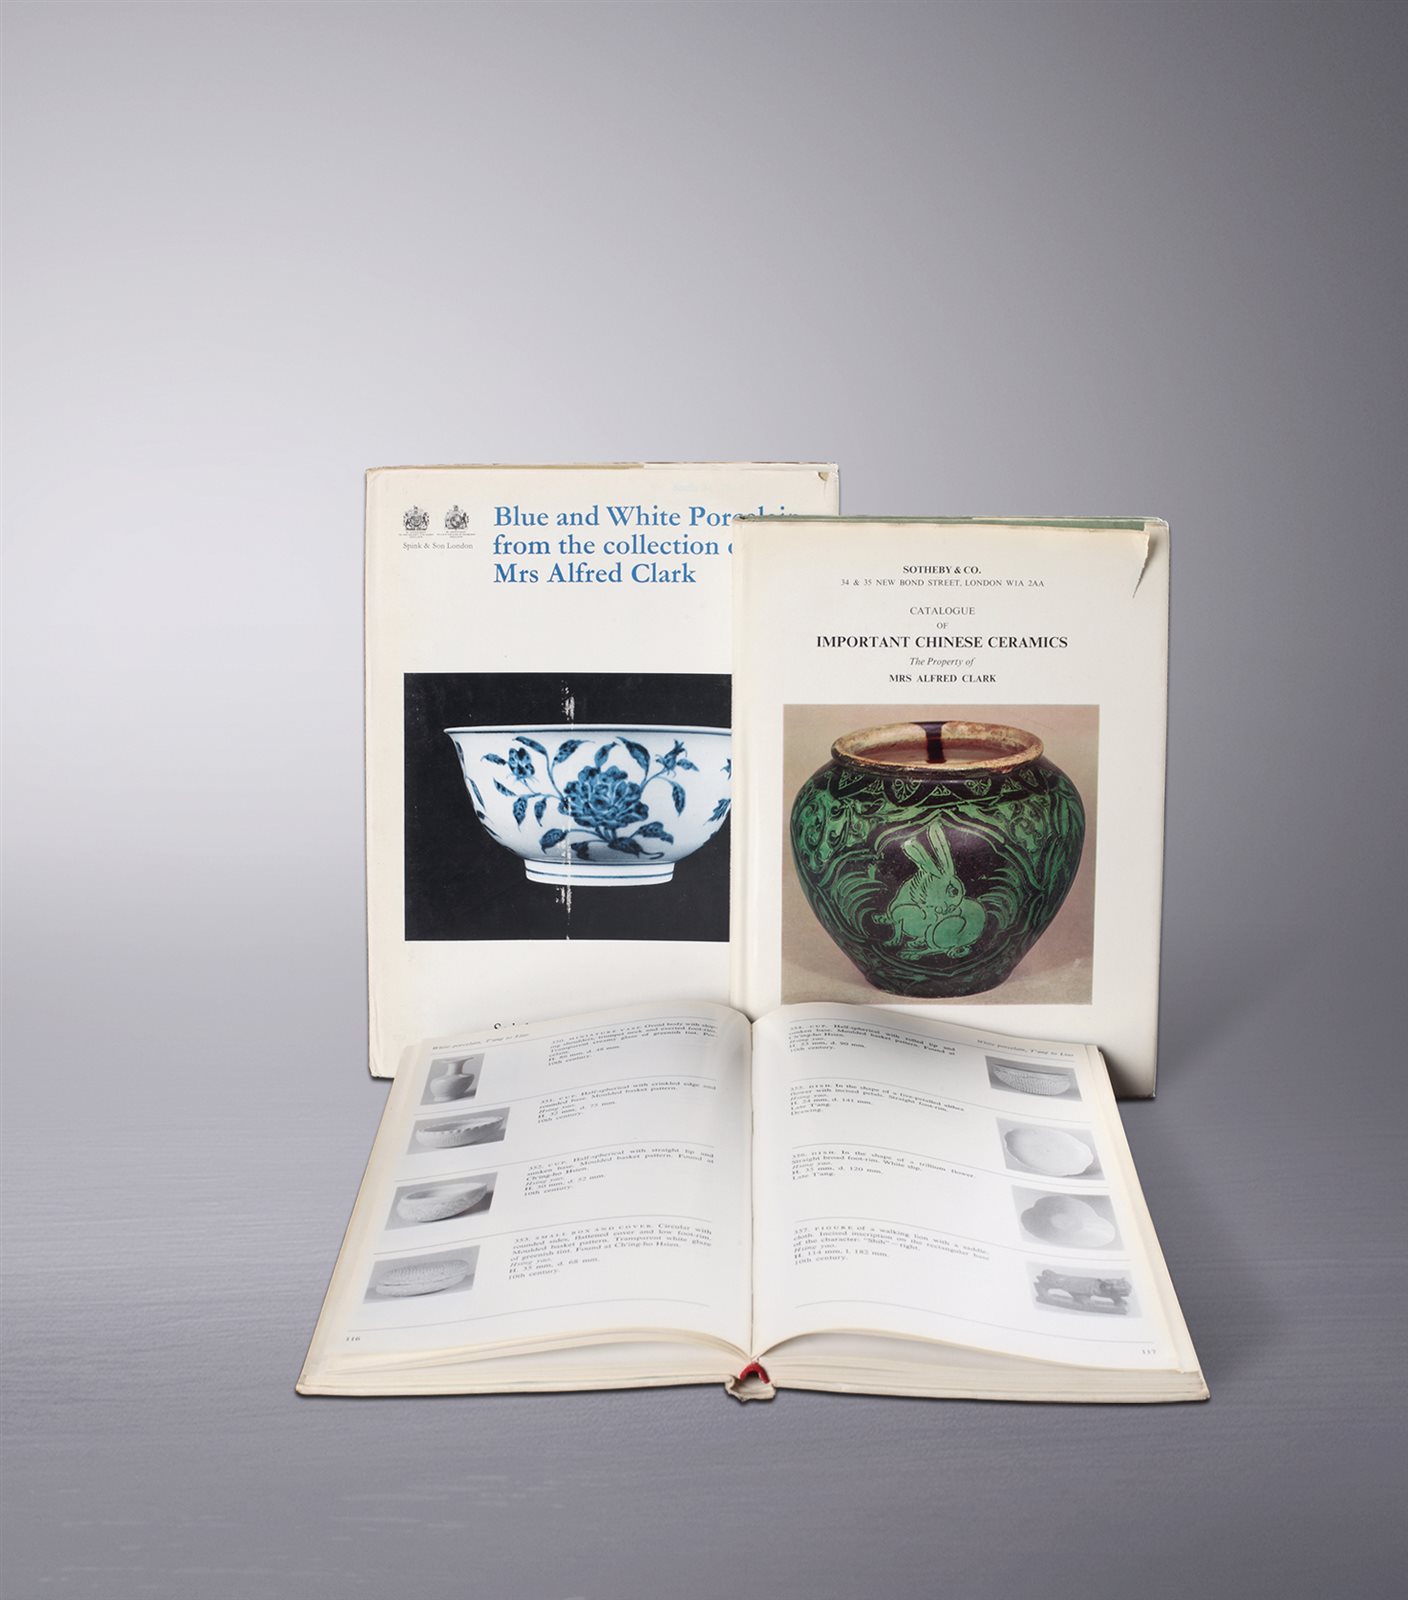 克拉克夫人、卡尔·坎普藏中国瓷器展览拍卖图录3册